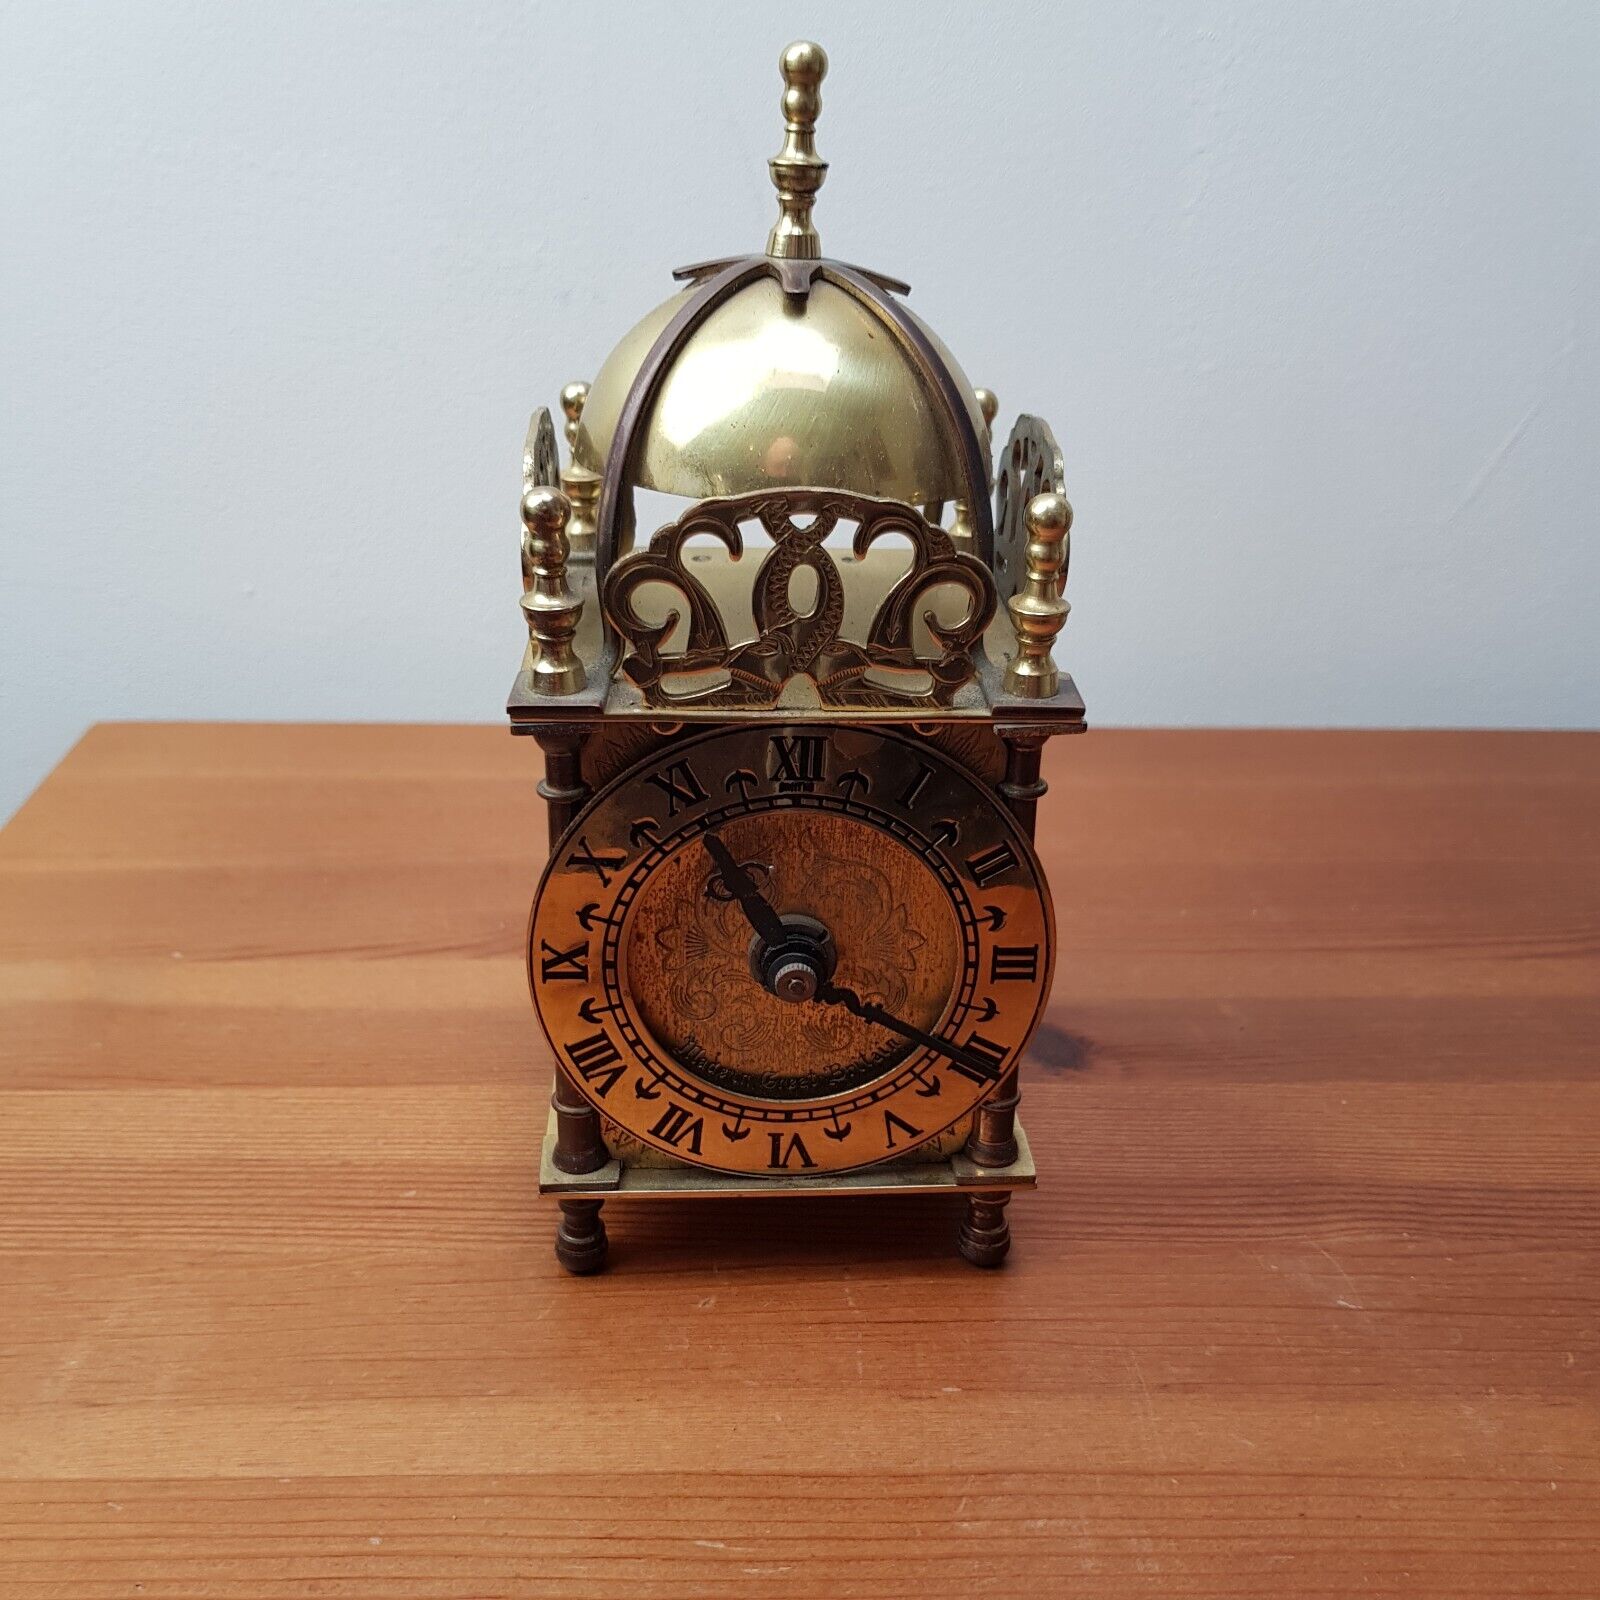  smiths lantern  clock vintage brass